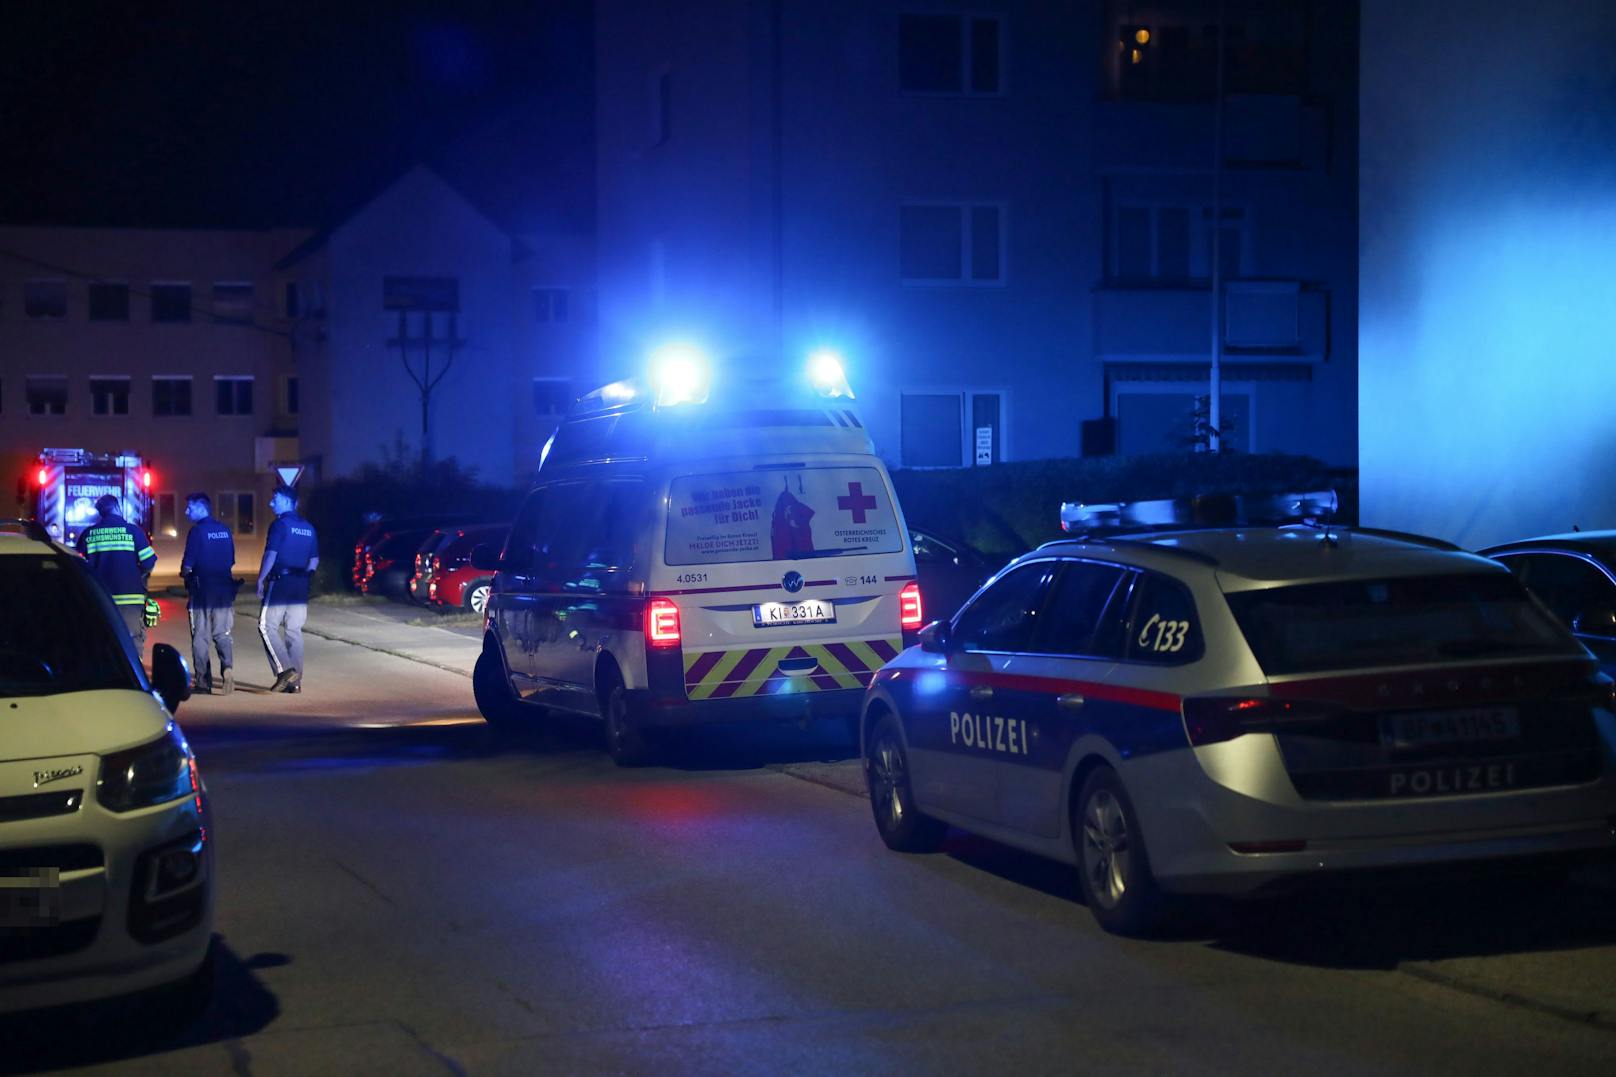 Die Einsatzkräfte von Feuerwehr, Rettungsdienst und Polizei standen in der Nacht auf Dienstag bei einer Personenrettung in einem Wohnhaus in Kremsmünster (Bezirk Kirchdorf an der Krems) im Einsatz.